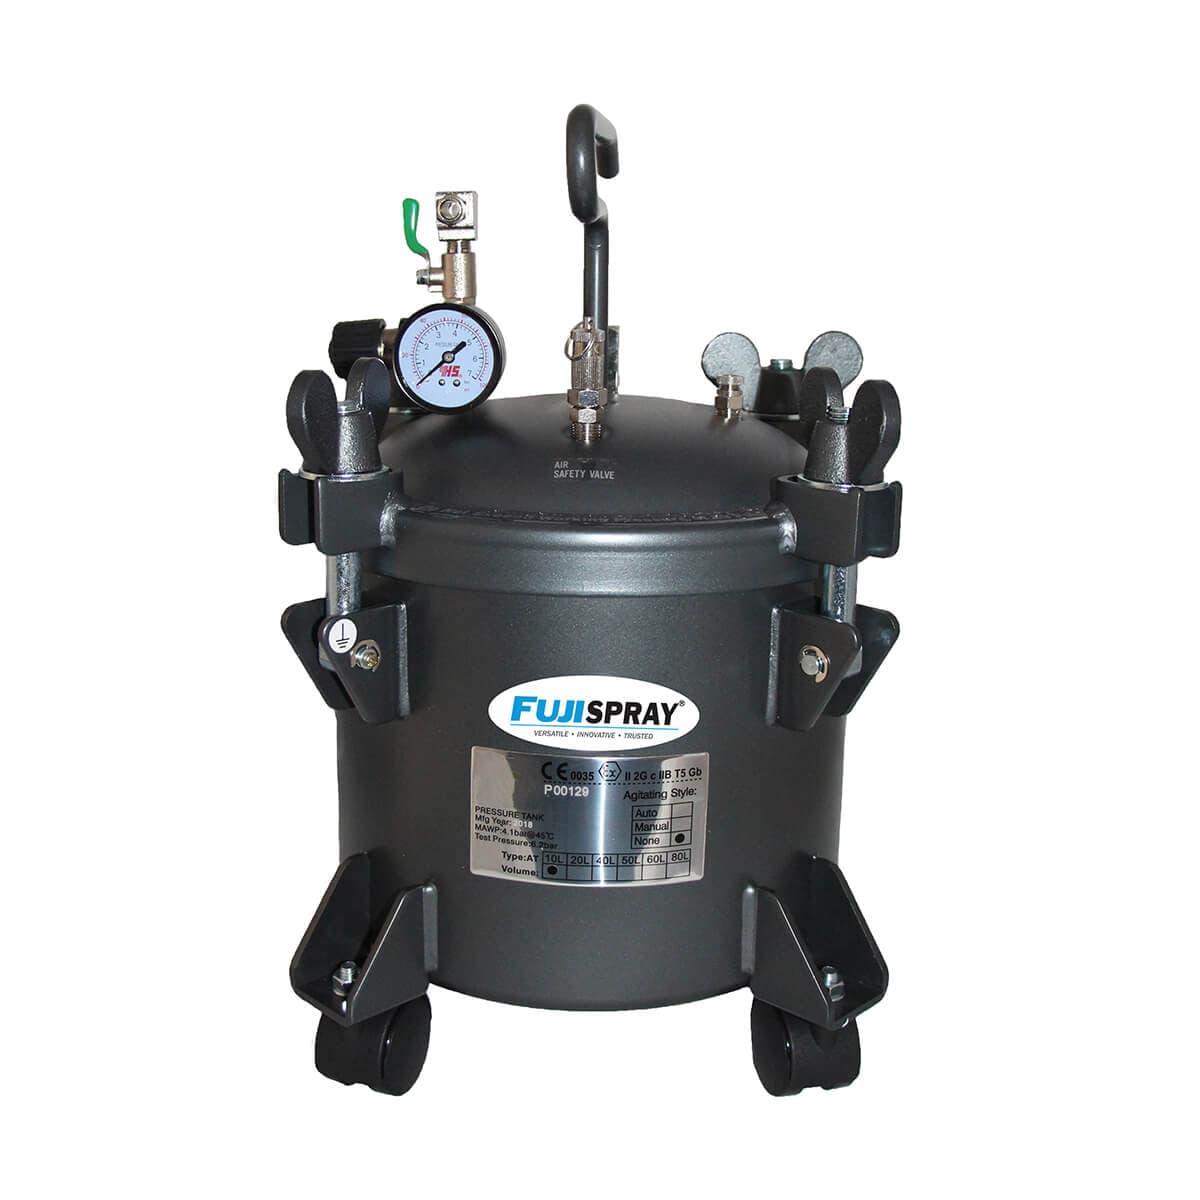 Fuji Spray 5470 Compressor Spray Guns & Accessories 2.5 Gallon Pressure Pot